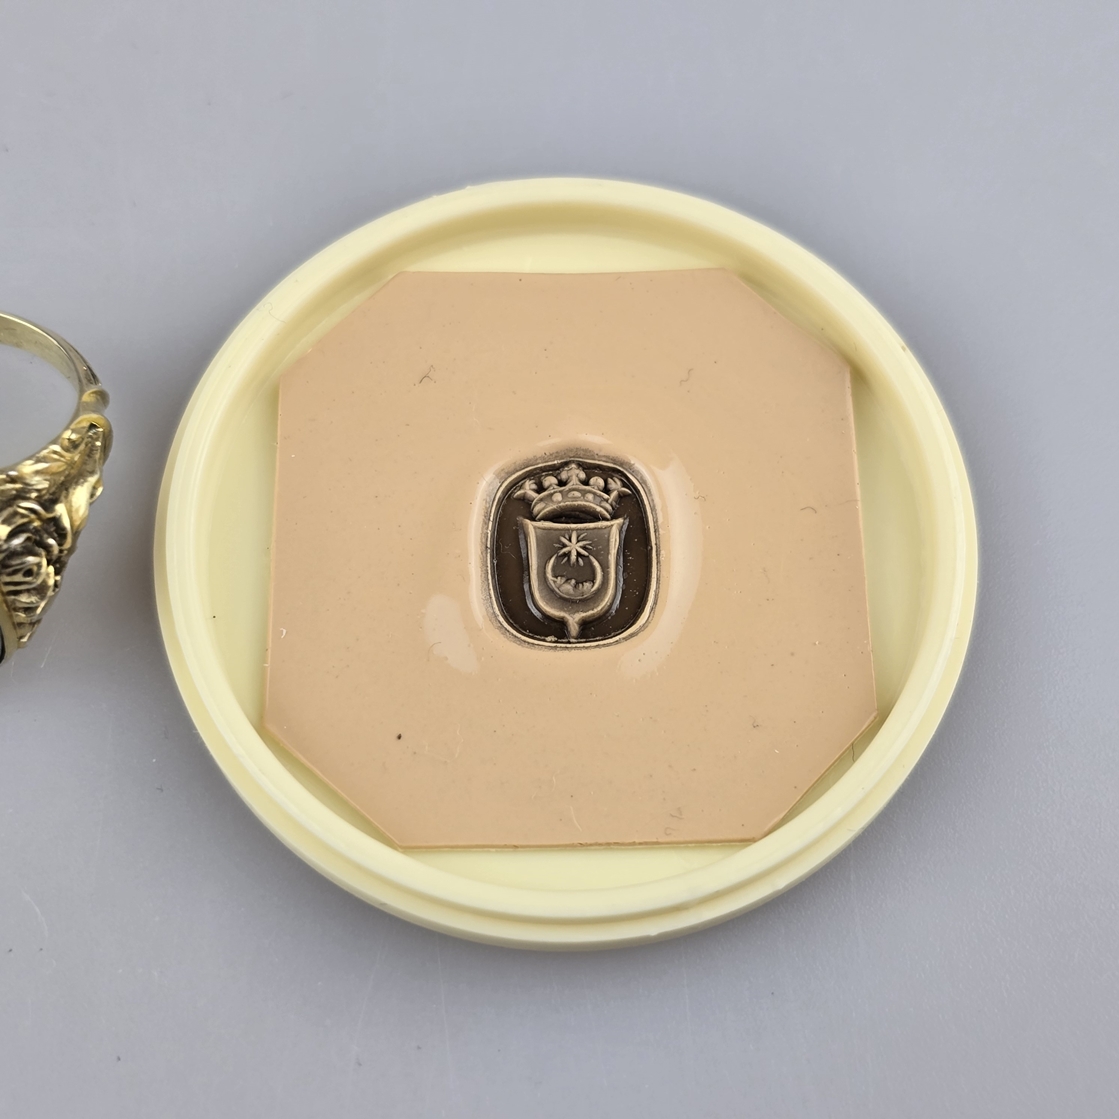 Siegelring - Silber 835/000, gepunzt, vergoldet, Schulterpartie mit Blattzier, Lagenachat-Intaglio - Image 6 of 6